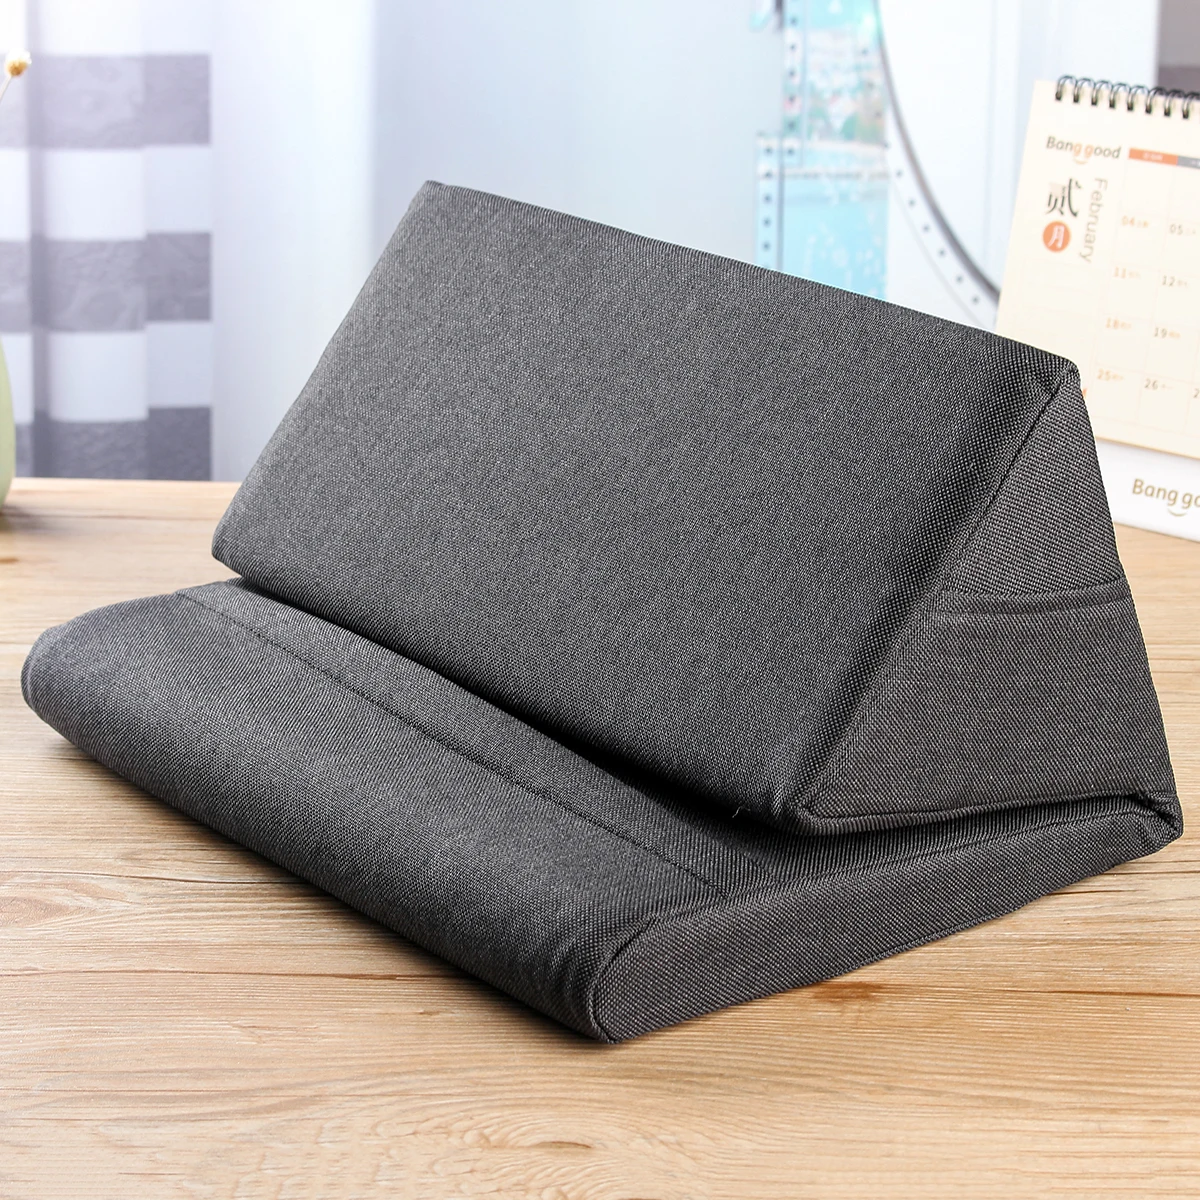 Многофункциональная подставка для ноутбука, планшета, подушка из пены, охлаждающая подставка для ноутбука, подставка для планшета, подставка, подушка для отдыха на коленях, подушка для Ipad - Цвет: Черный